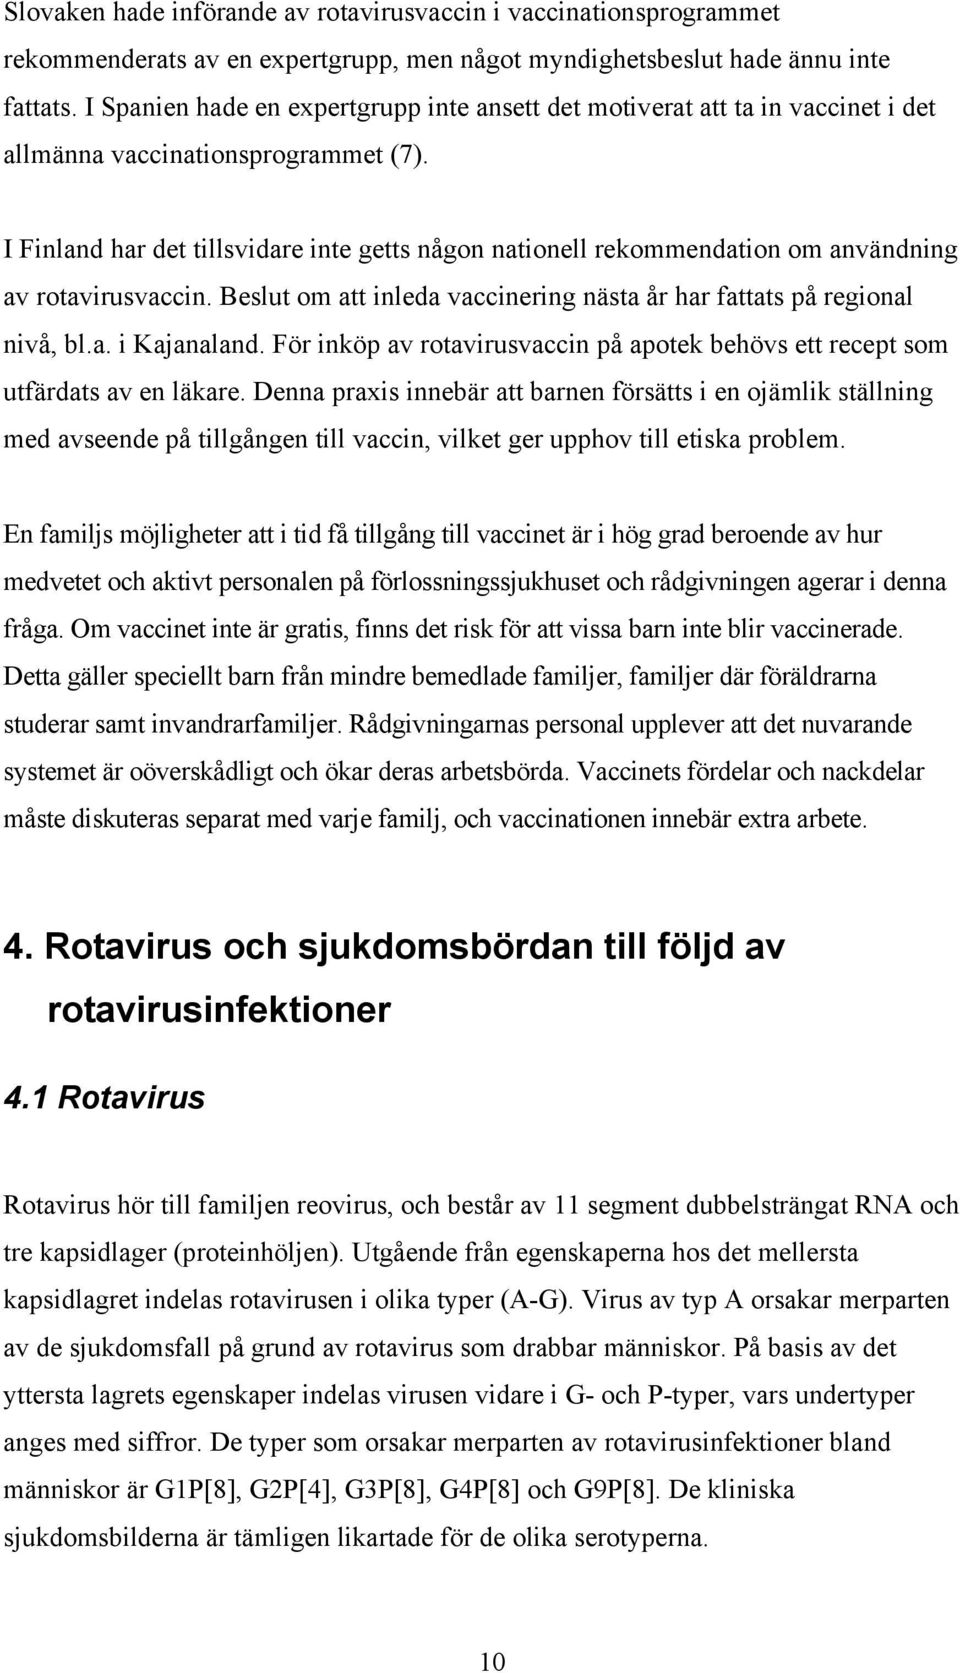 I Finland har det tillsvidare inte getts någon nationell rekommendation om användning av rotavirusvaccin. Beslut om att inleda vaccinering nästa år har fattats på regional nivå, bl.a. i Kajanaland.